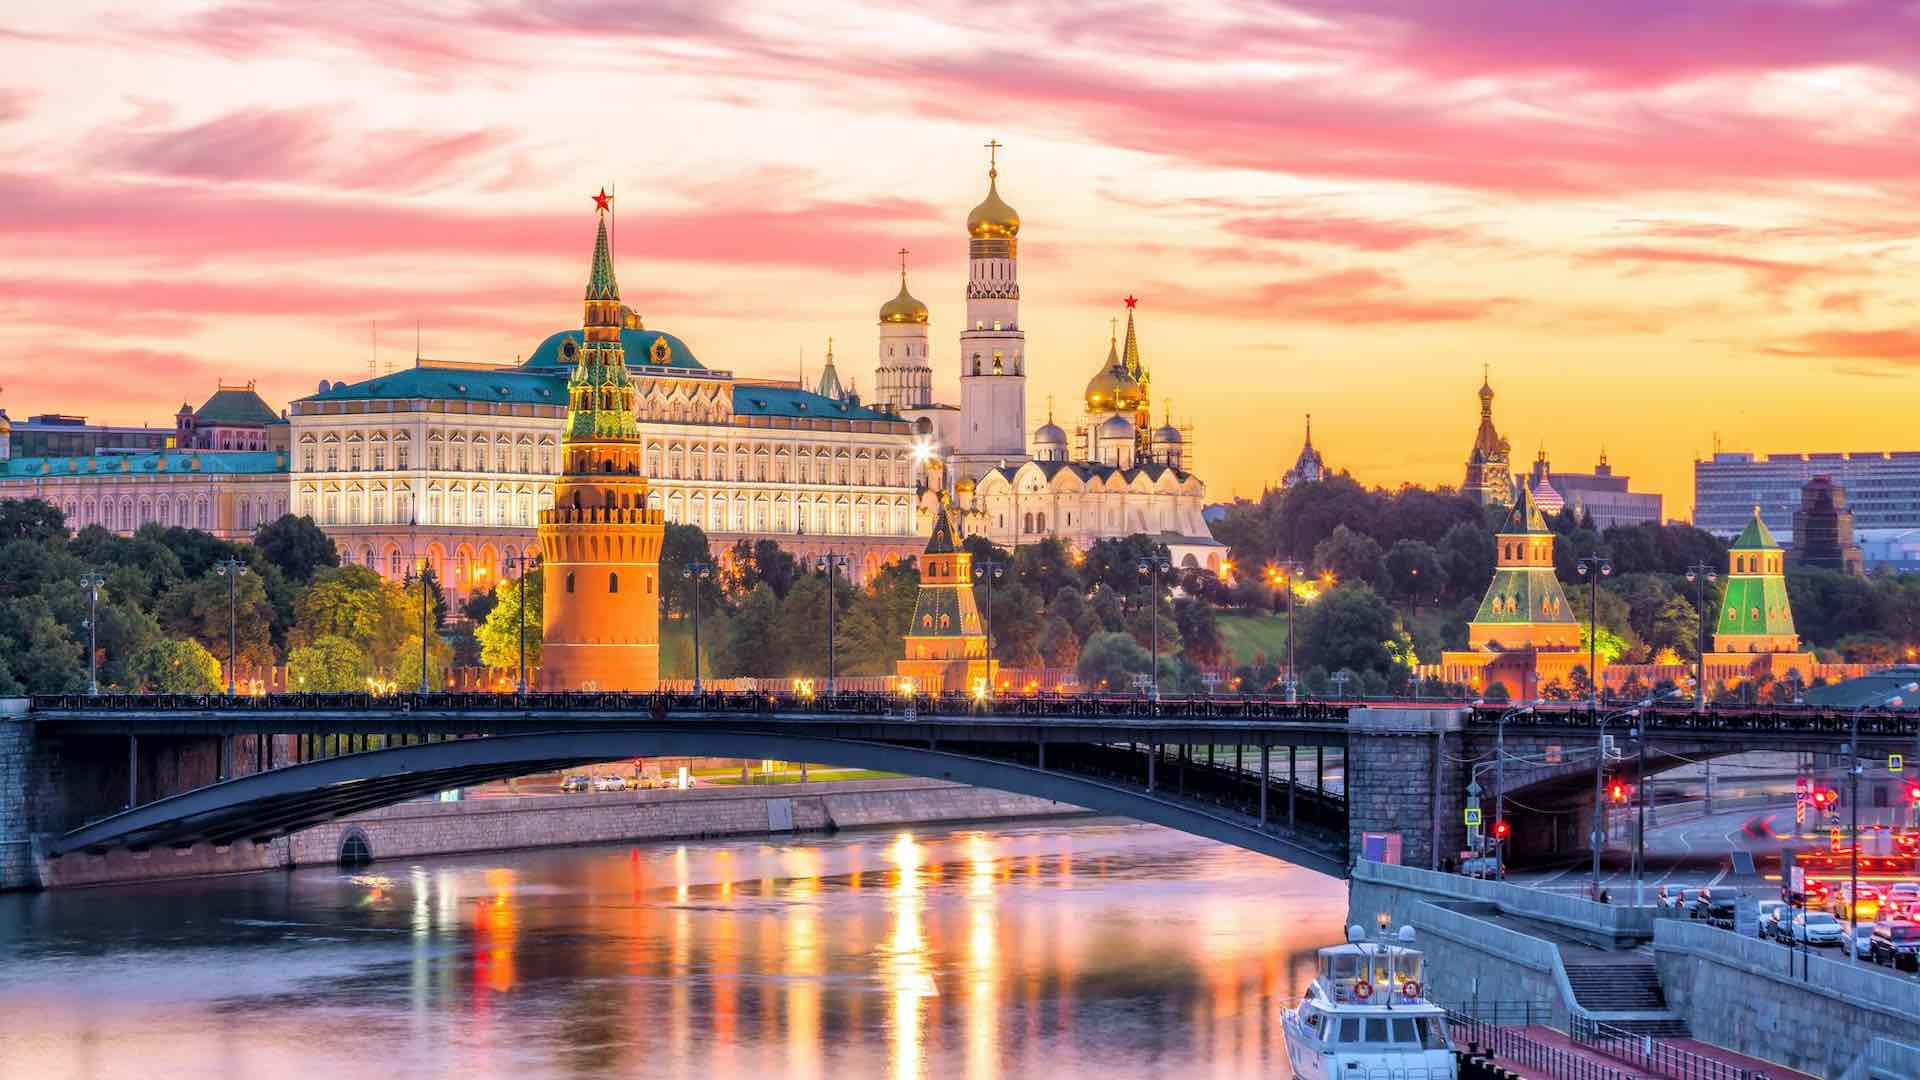 روسيا تبدأ في منح التأشيرات الالكترونية للهنود اعتباراً من الأول من أغسطس لتسهيل السفر